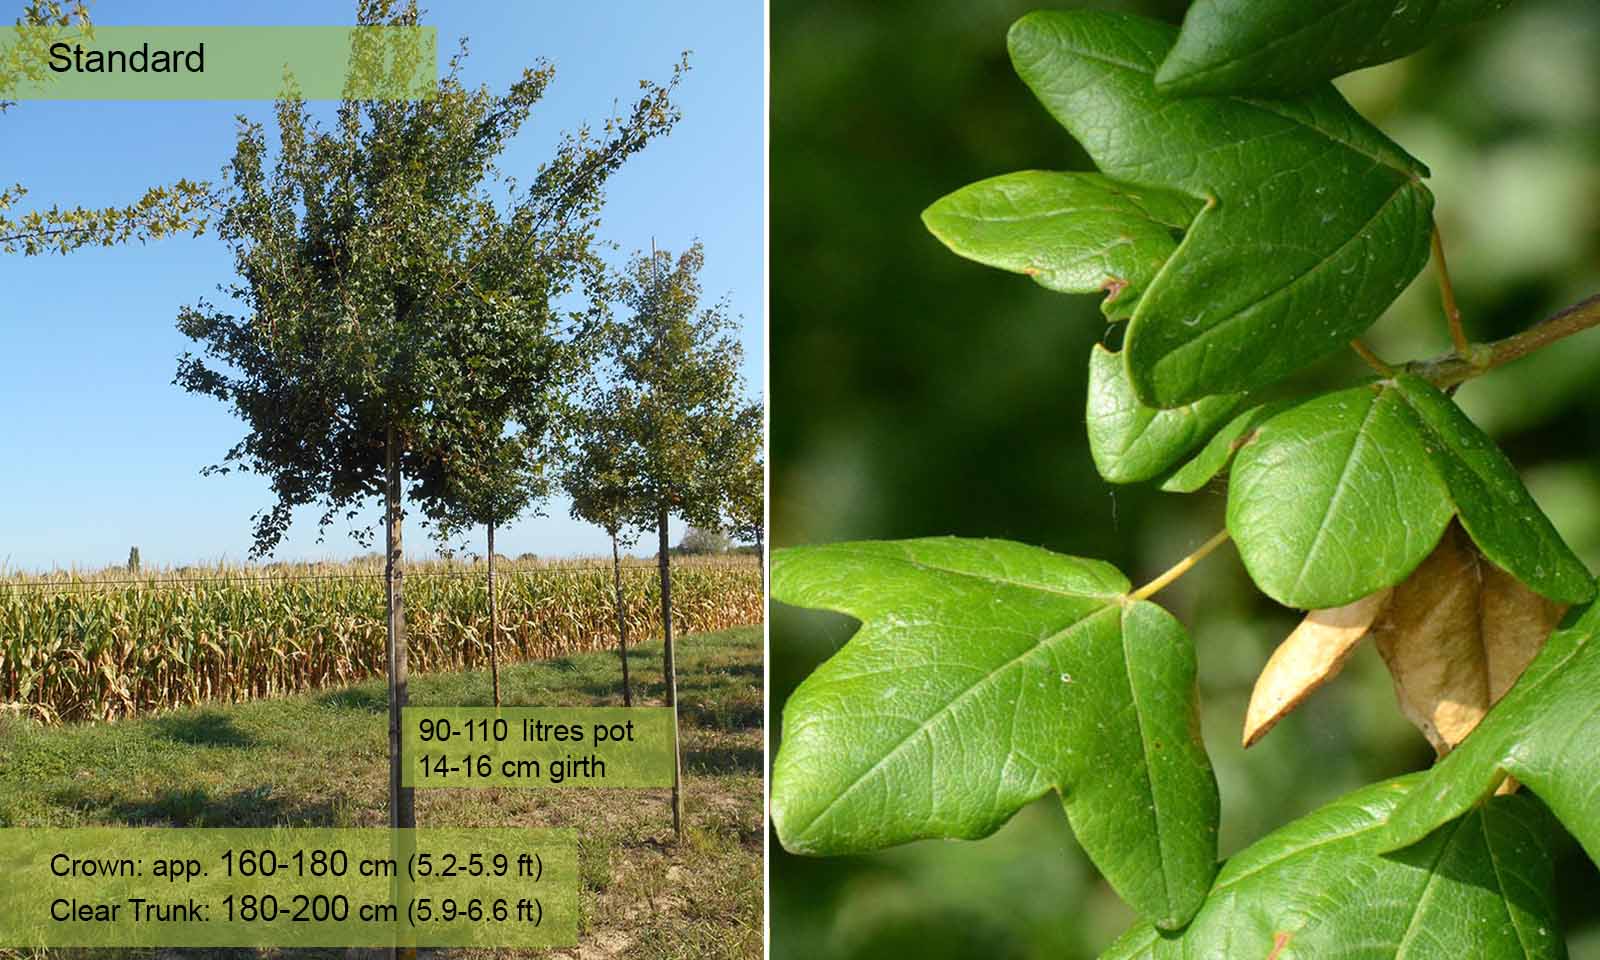 Acer Monspessulanum (Montpellier Maple) - Standard